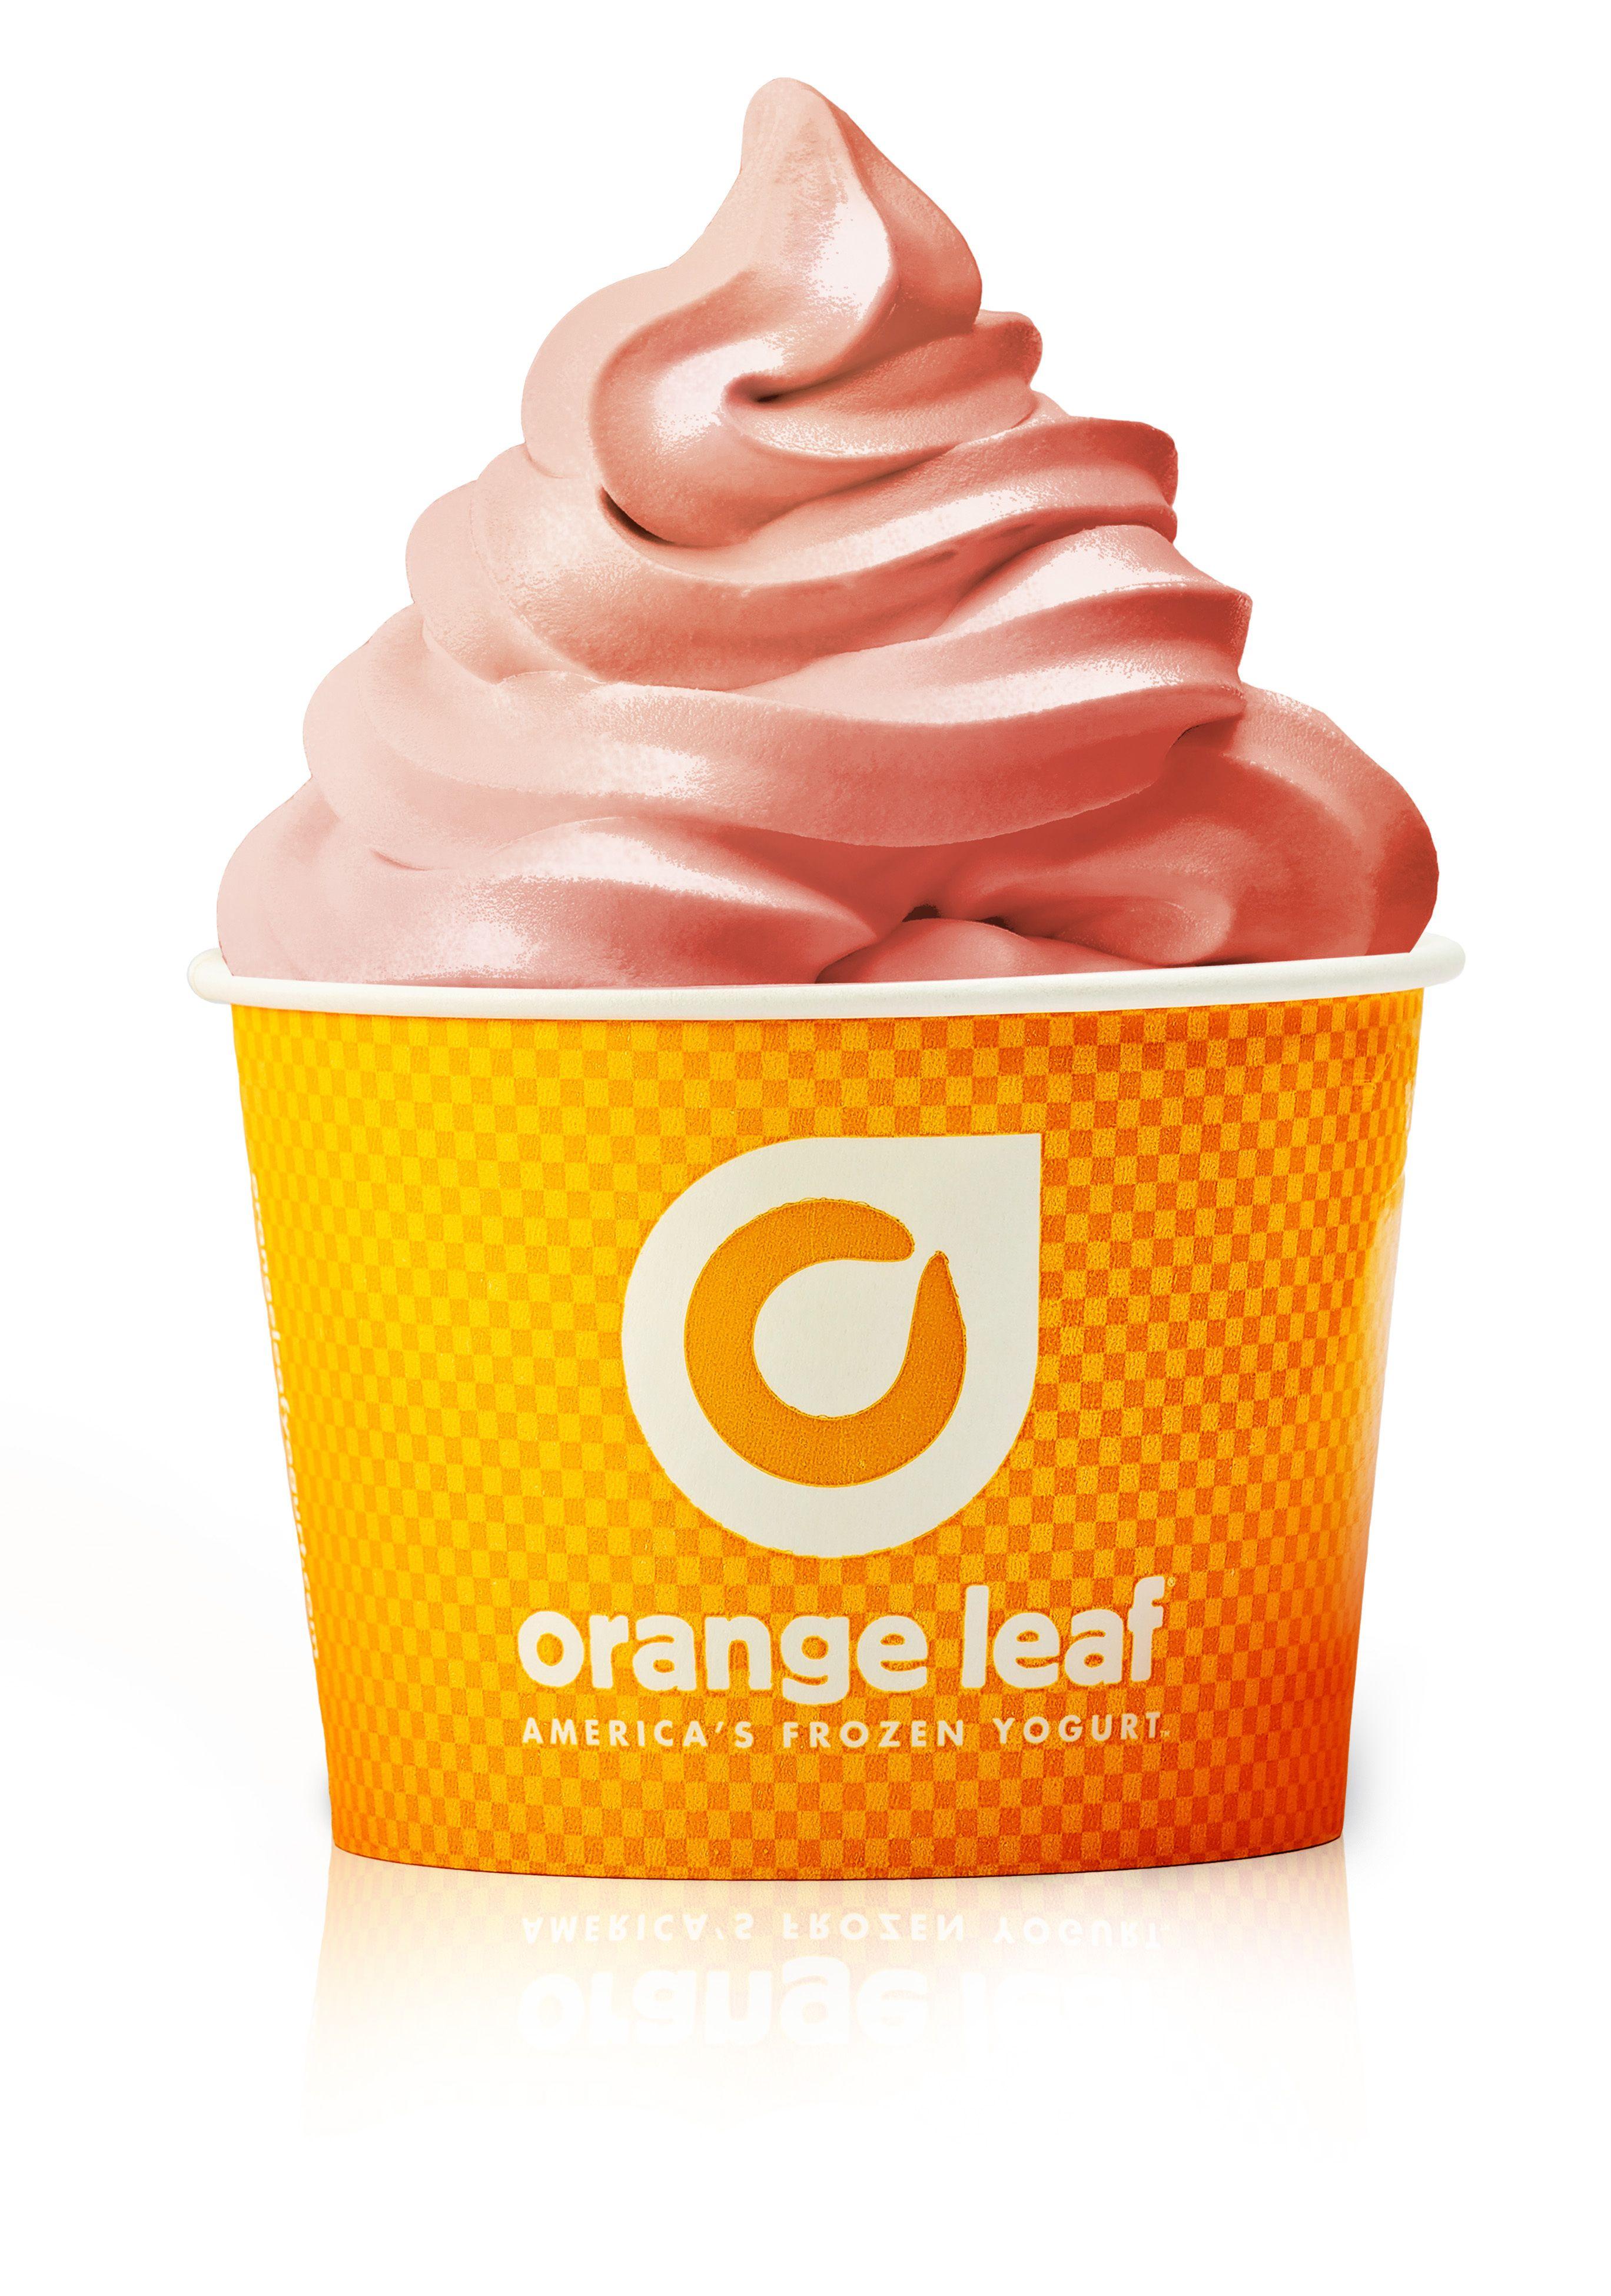 Orsnge Leaf Logo - Orange Leaf Frozen Yogurt Introduces New Dairy Free Pink Lemonade ...